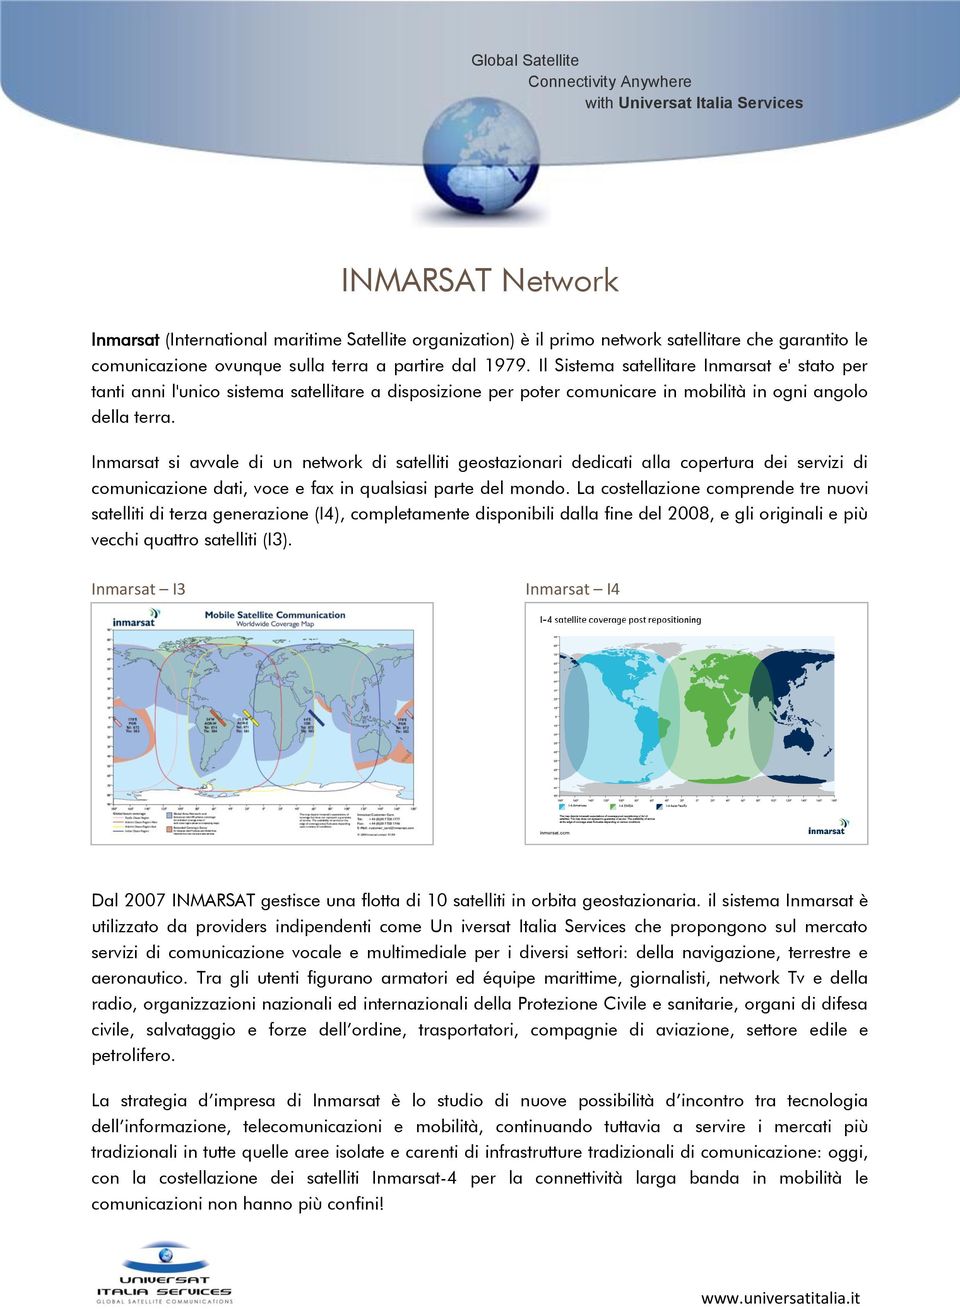 Inmarsat si avvale di un network di satelliti geostazionari dedicati alla copertura dei servizi di comunicazione dati, voce e fax in qualsiasi parte del mondo.